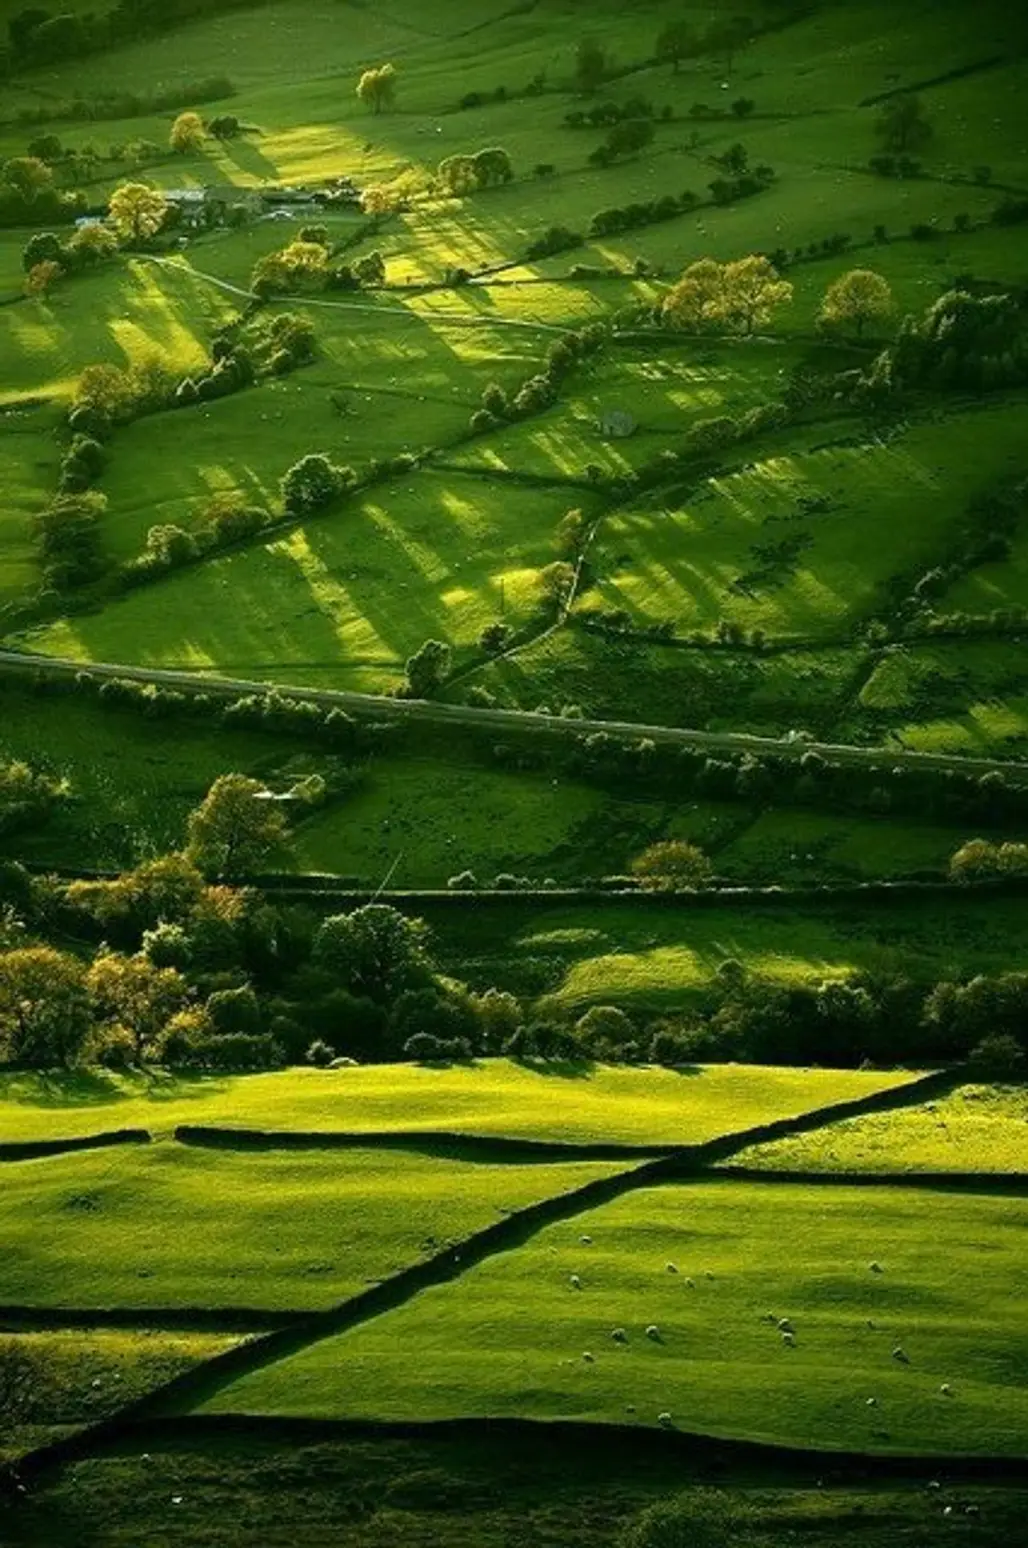 Green, Green Grass of Home